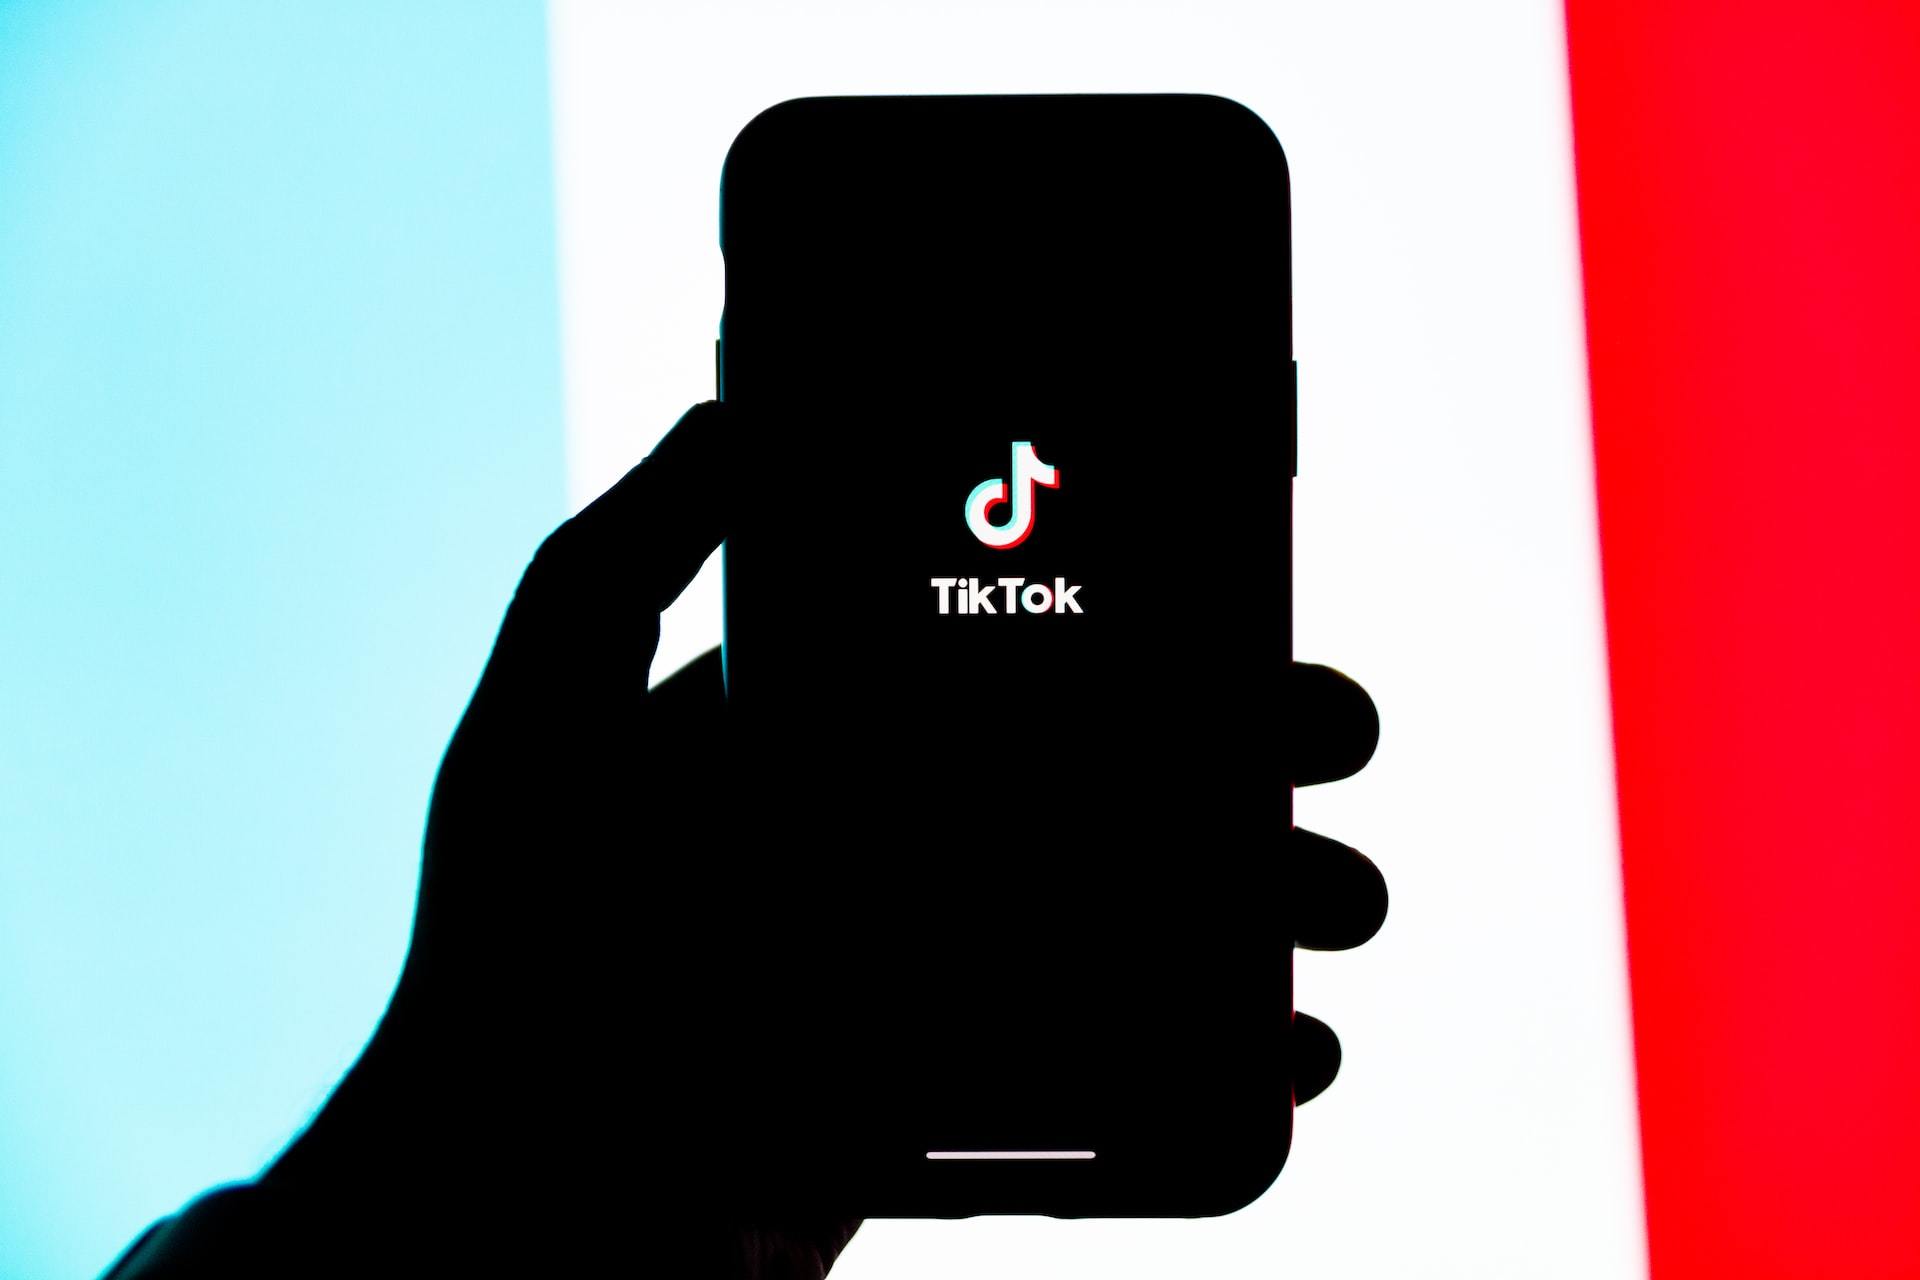 Descubren que el navegador de TikTok puede registrar todo lo que el usuario teclea